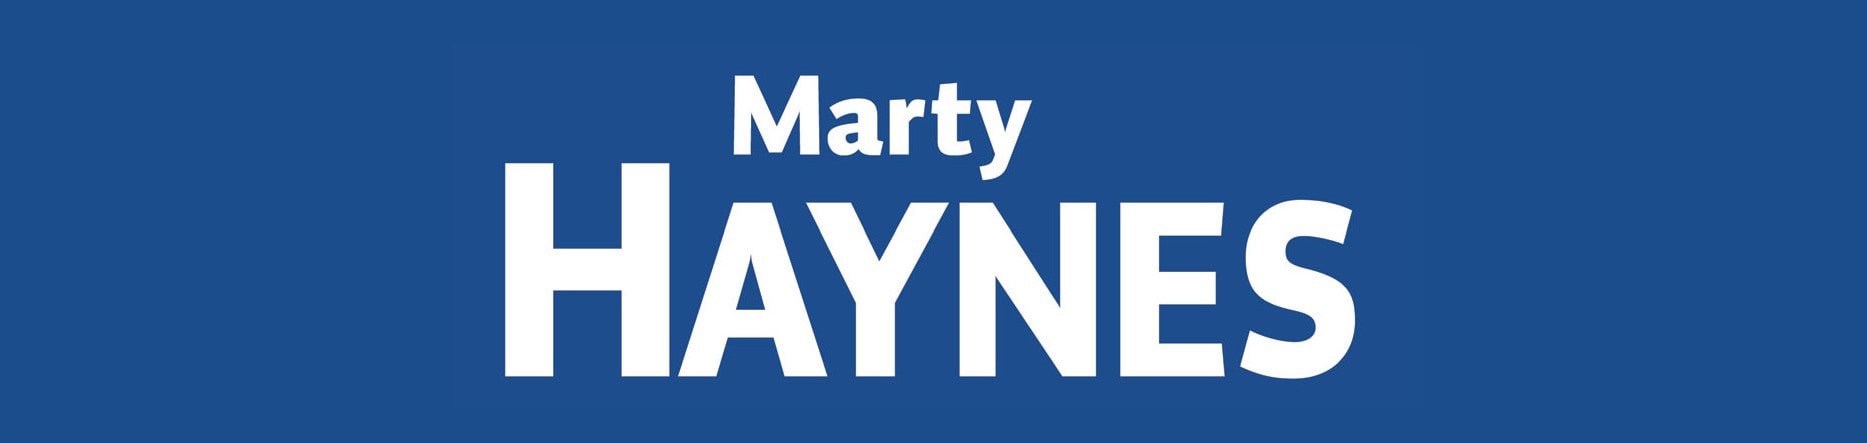 marty-haynes-name-2018-12-28-00-50-32-utc_orig.jpg